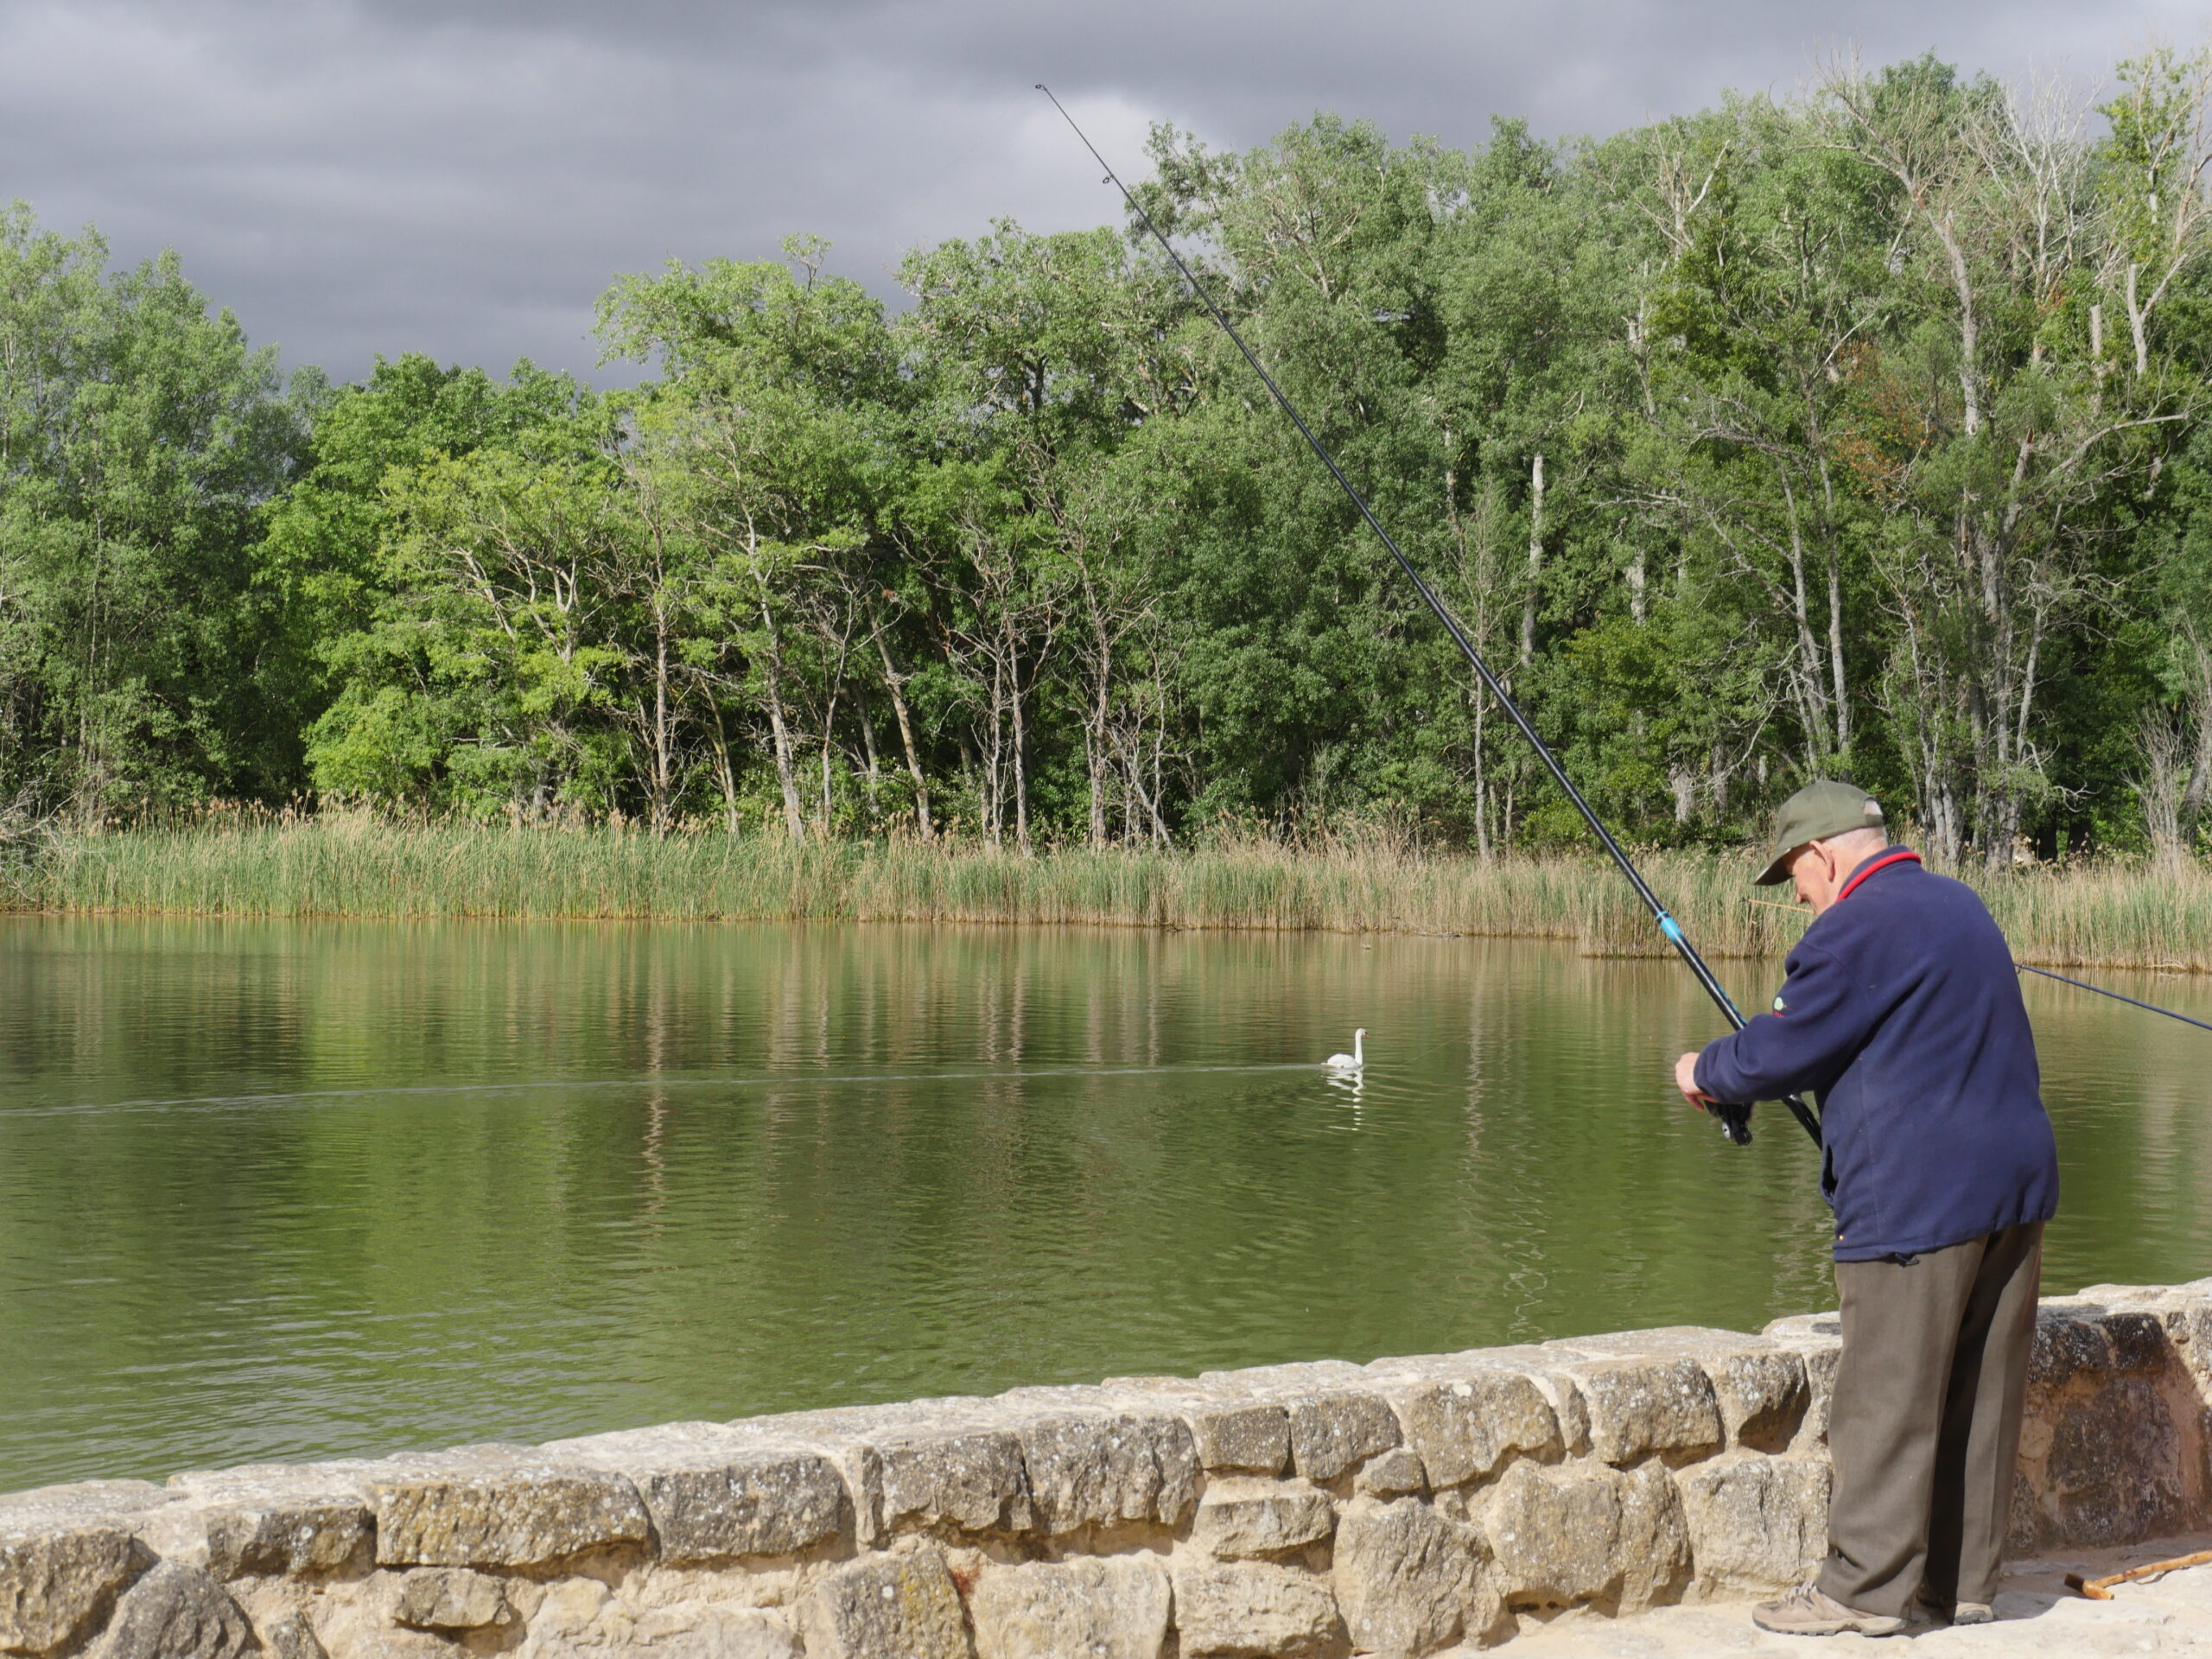 A man fishes in a lake near Logro&ntilde;o, Spain.